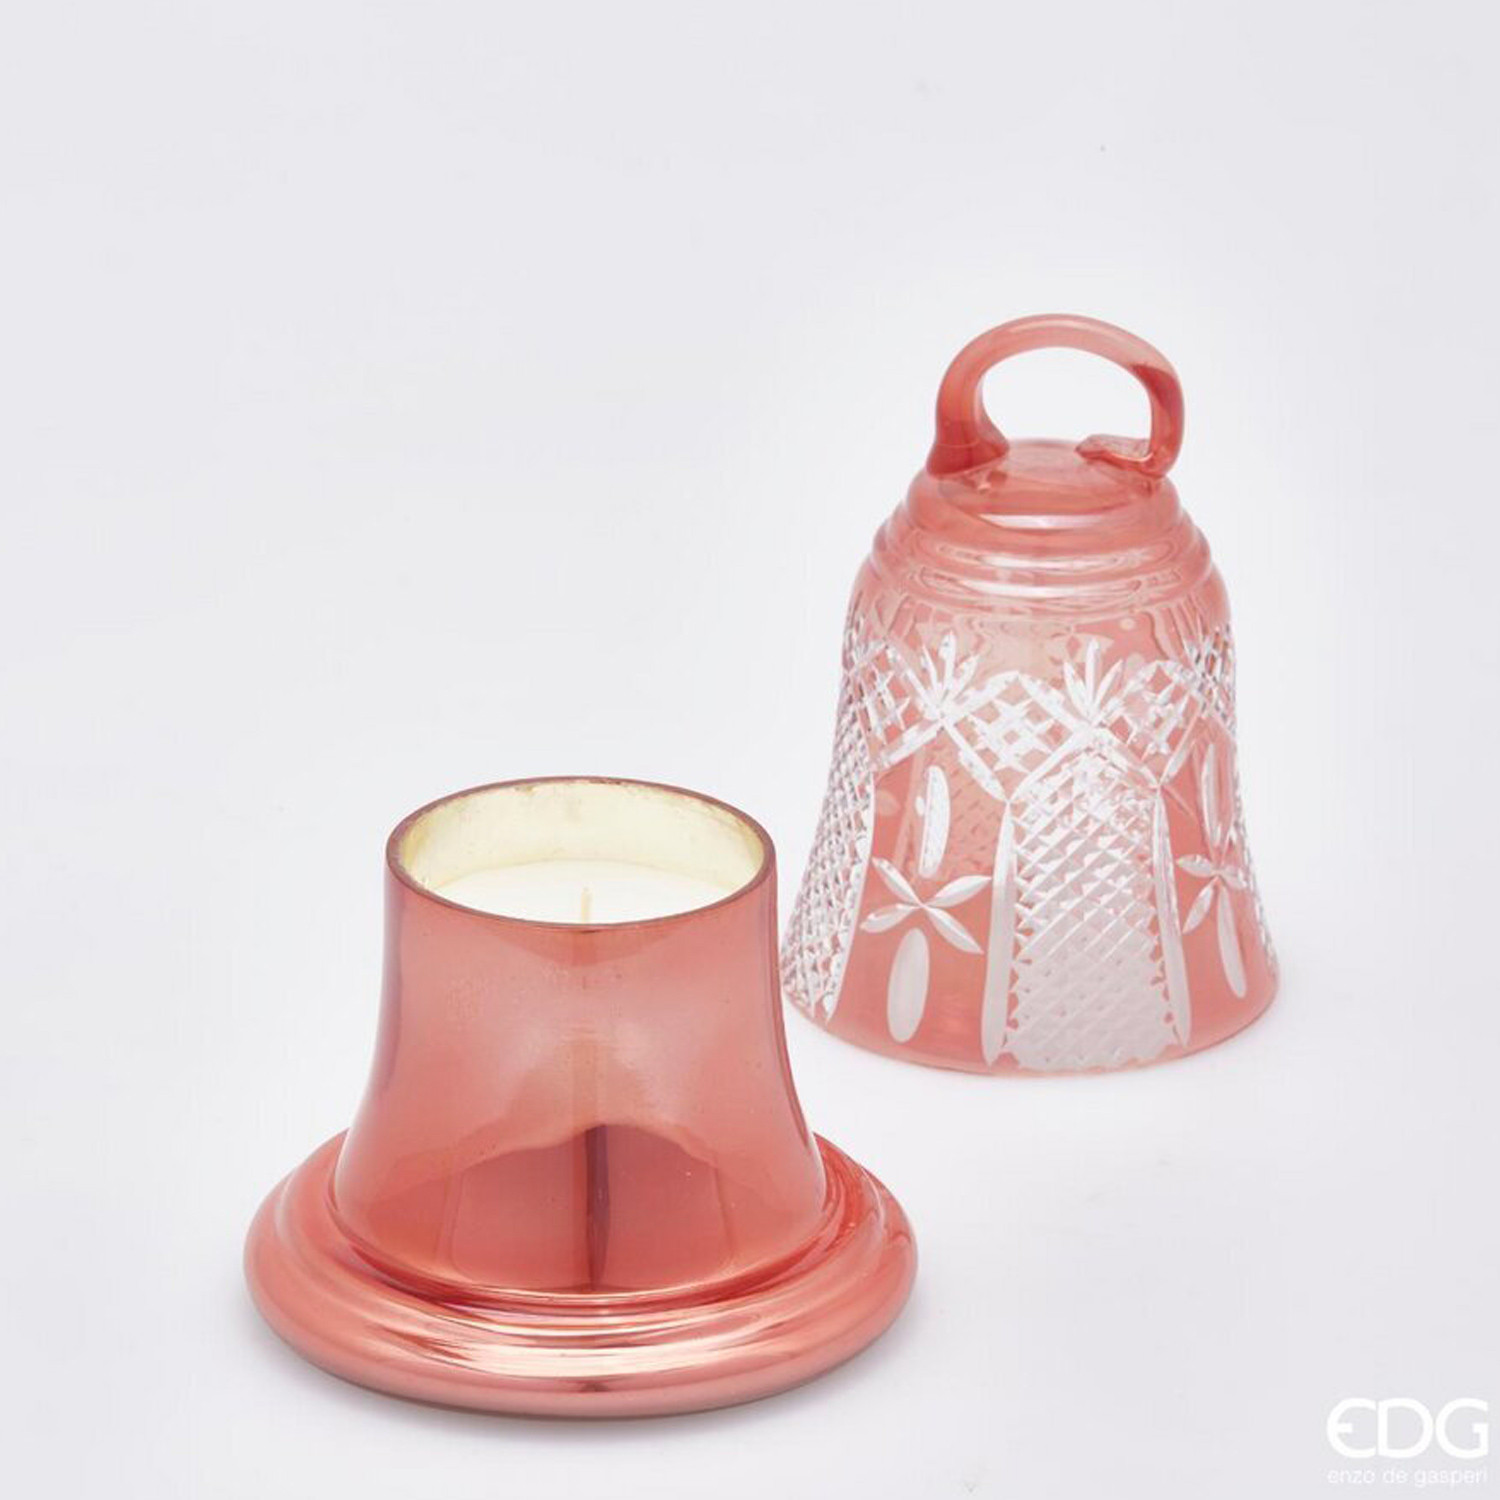 Candela campana in vetro rosa - 400 gr - EDG